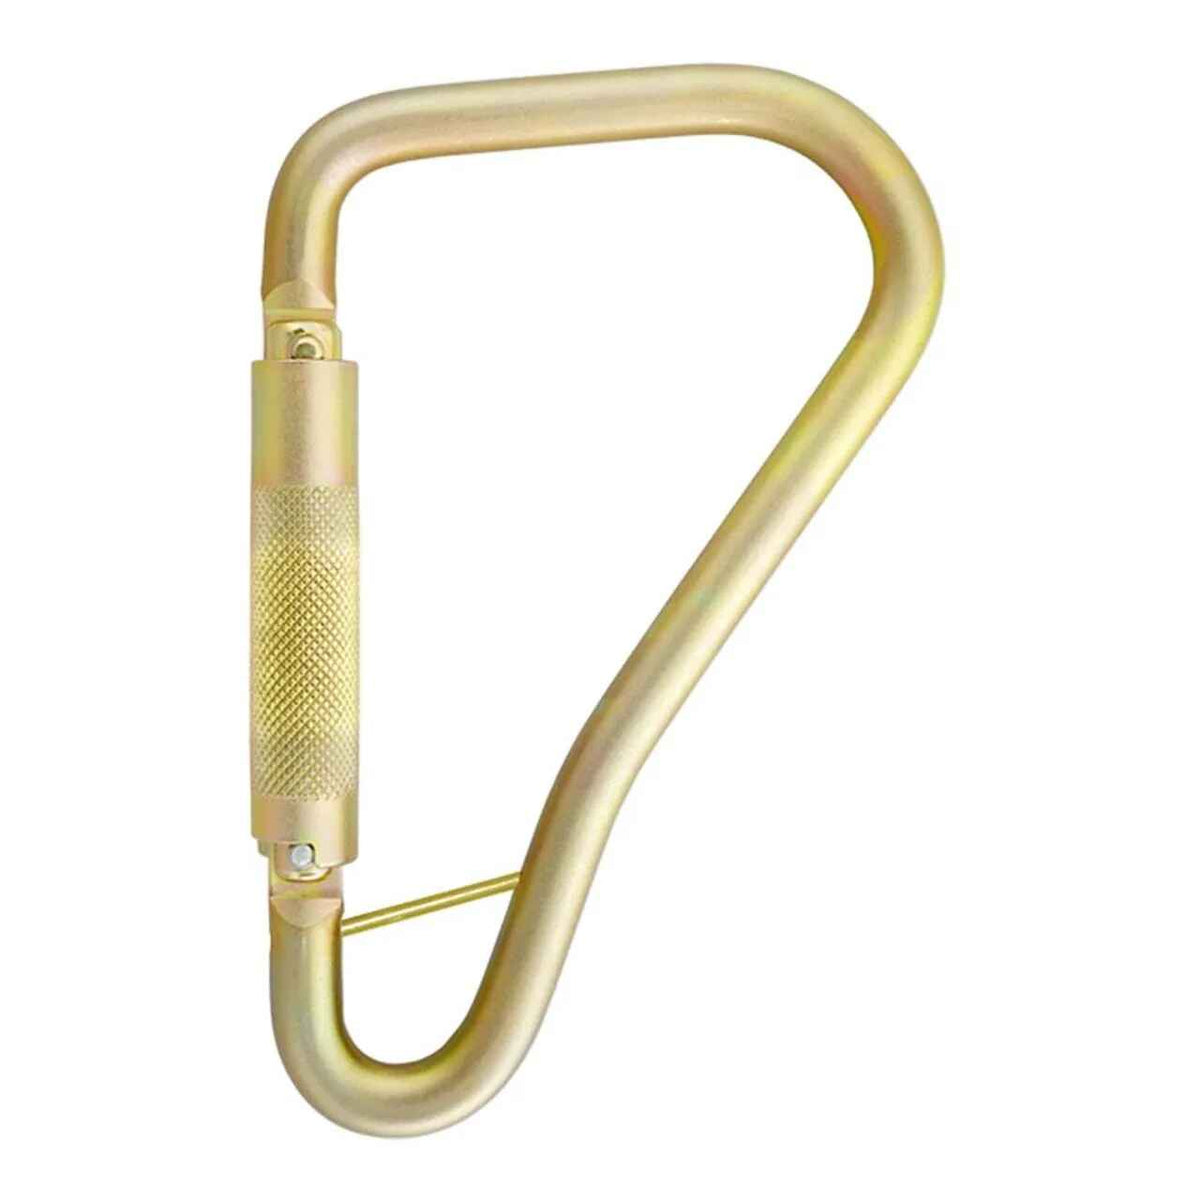 Steel Twist Lock Carabiner - 5005L2